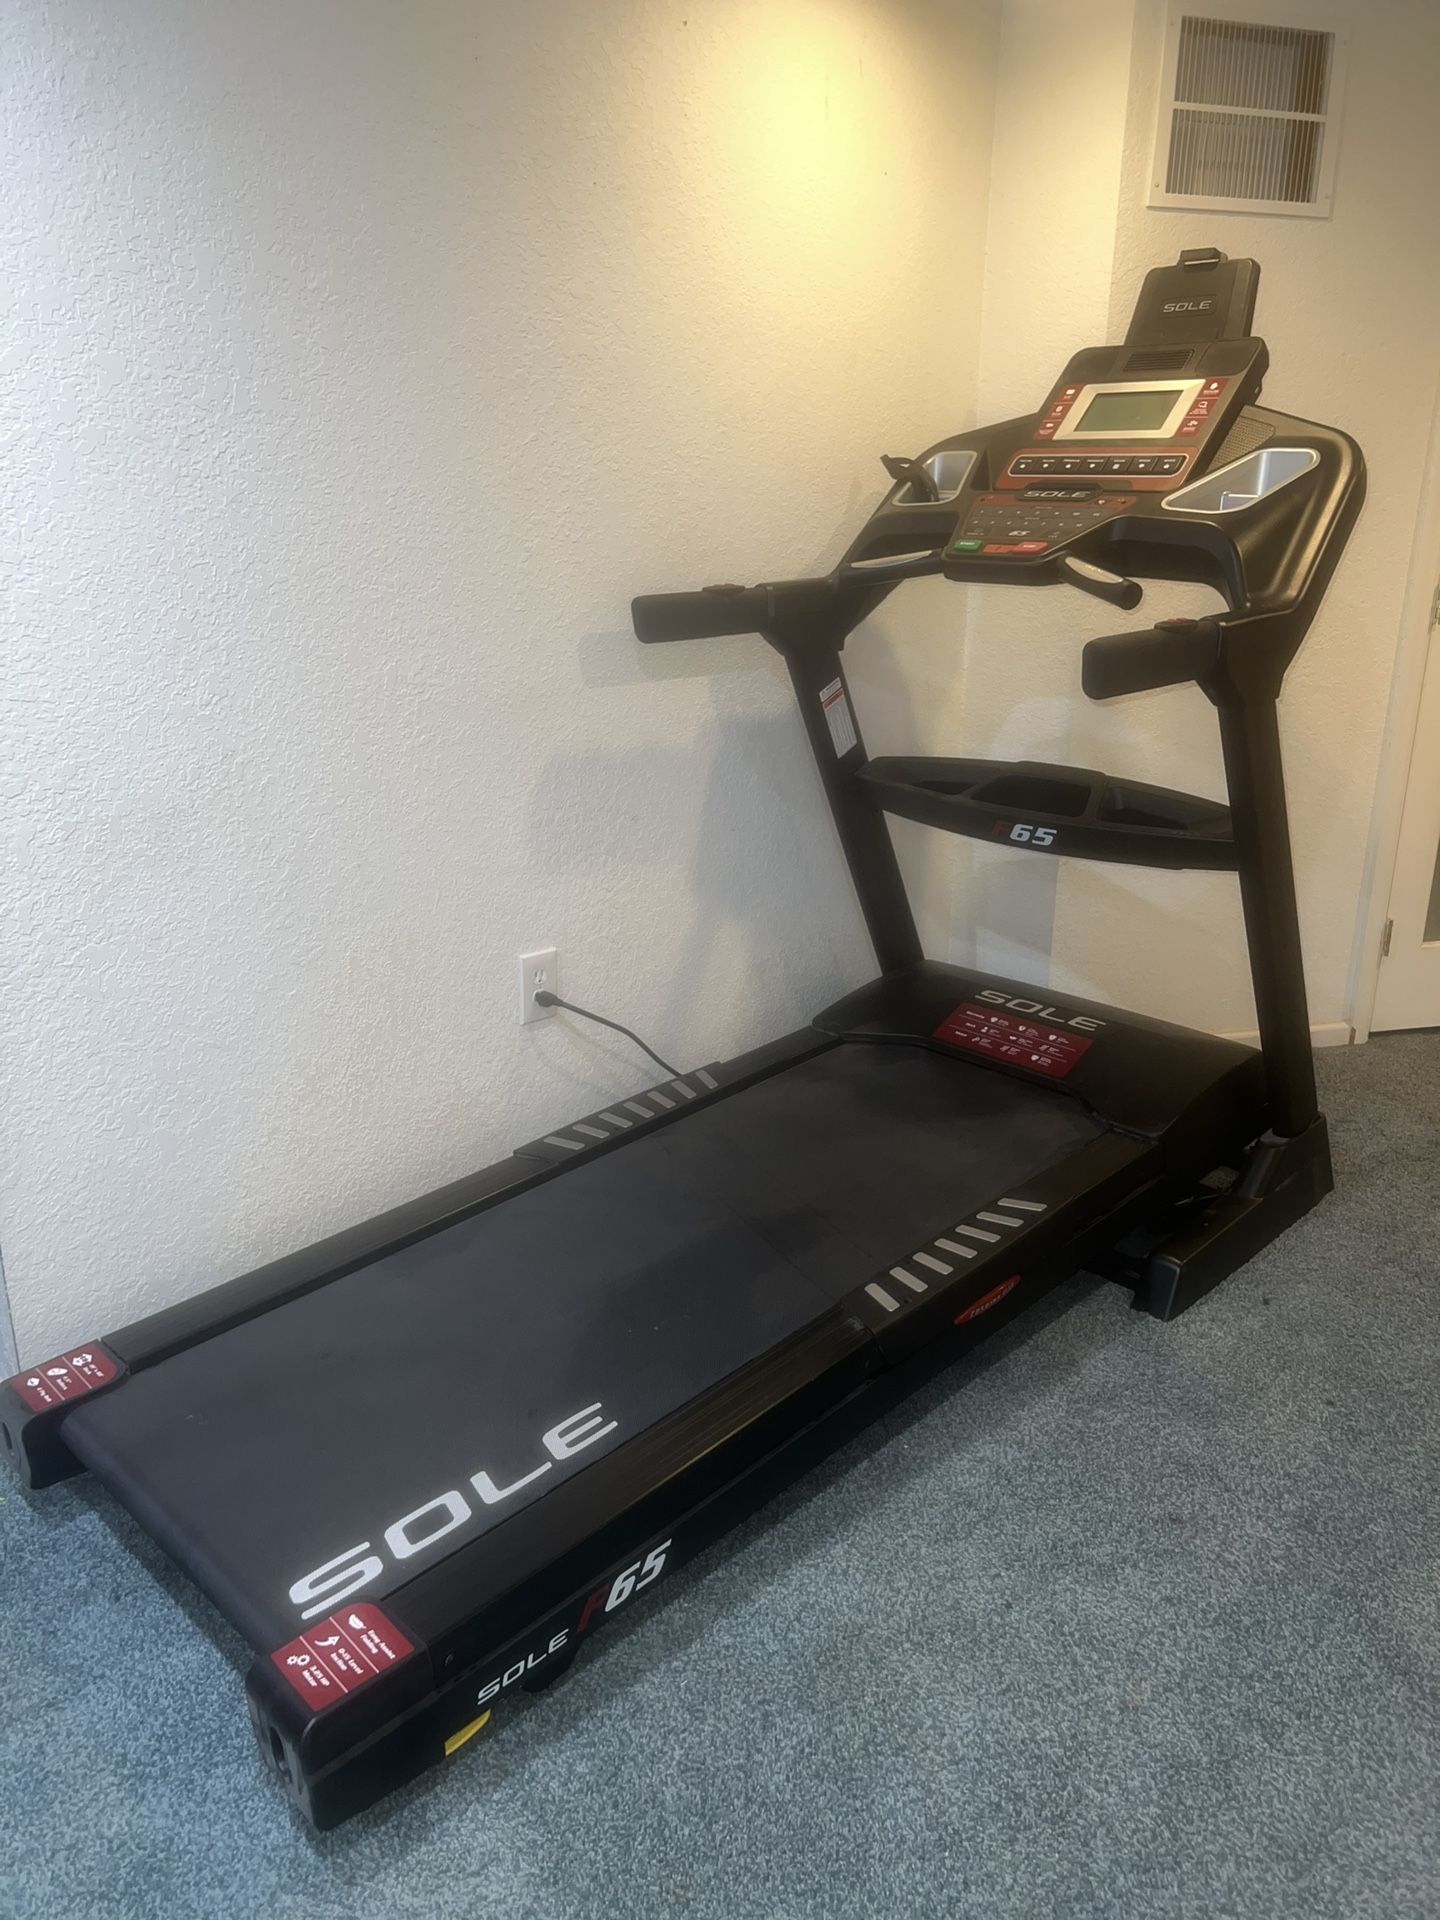 Sole fitness F65 treadmill